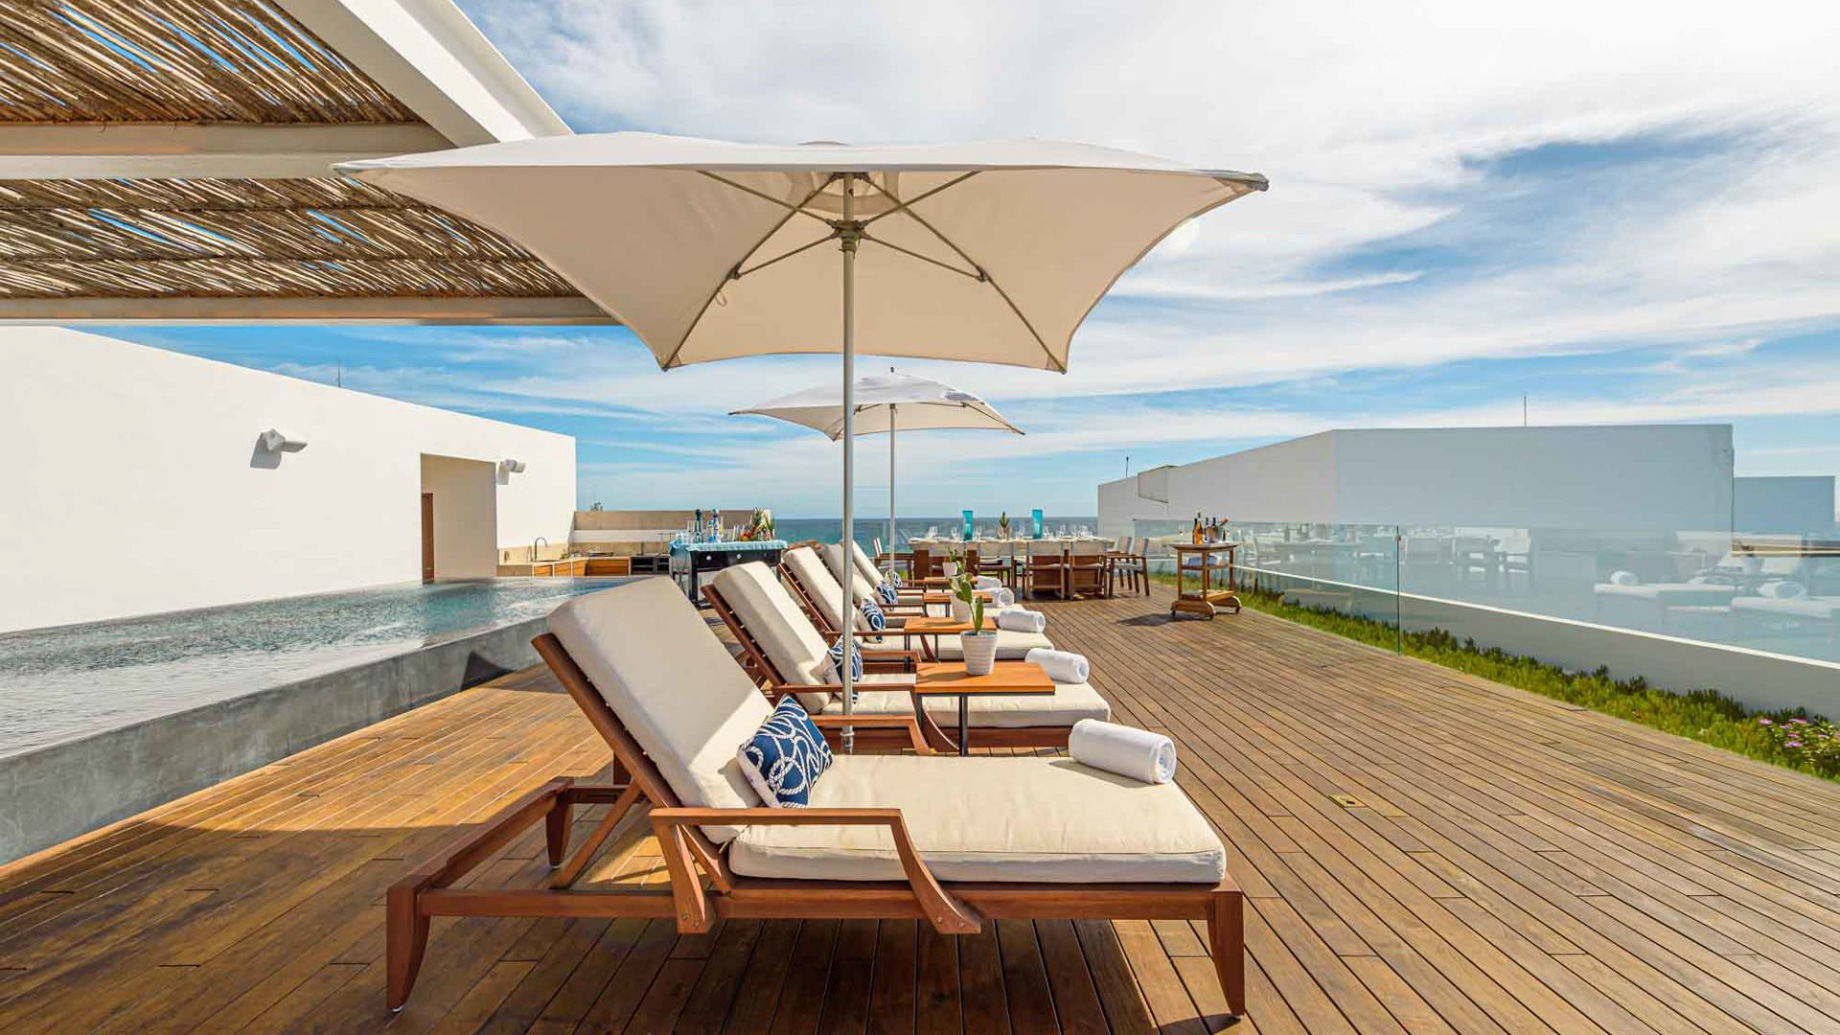 Viceroy Los Cabos Resort - San José del Cabo, Mexico - One Bedroom Penthouse Deck